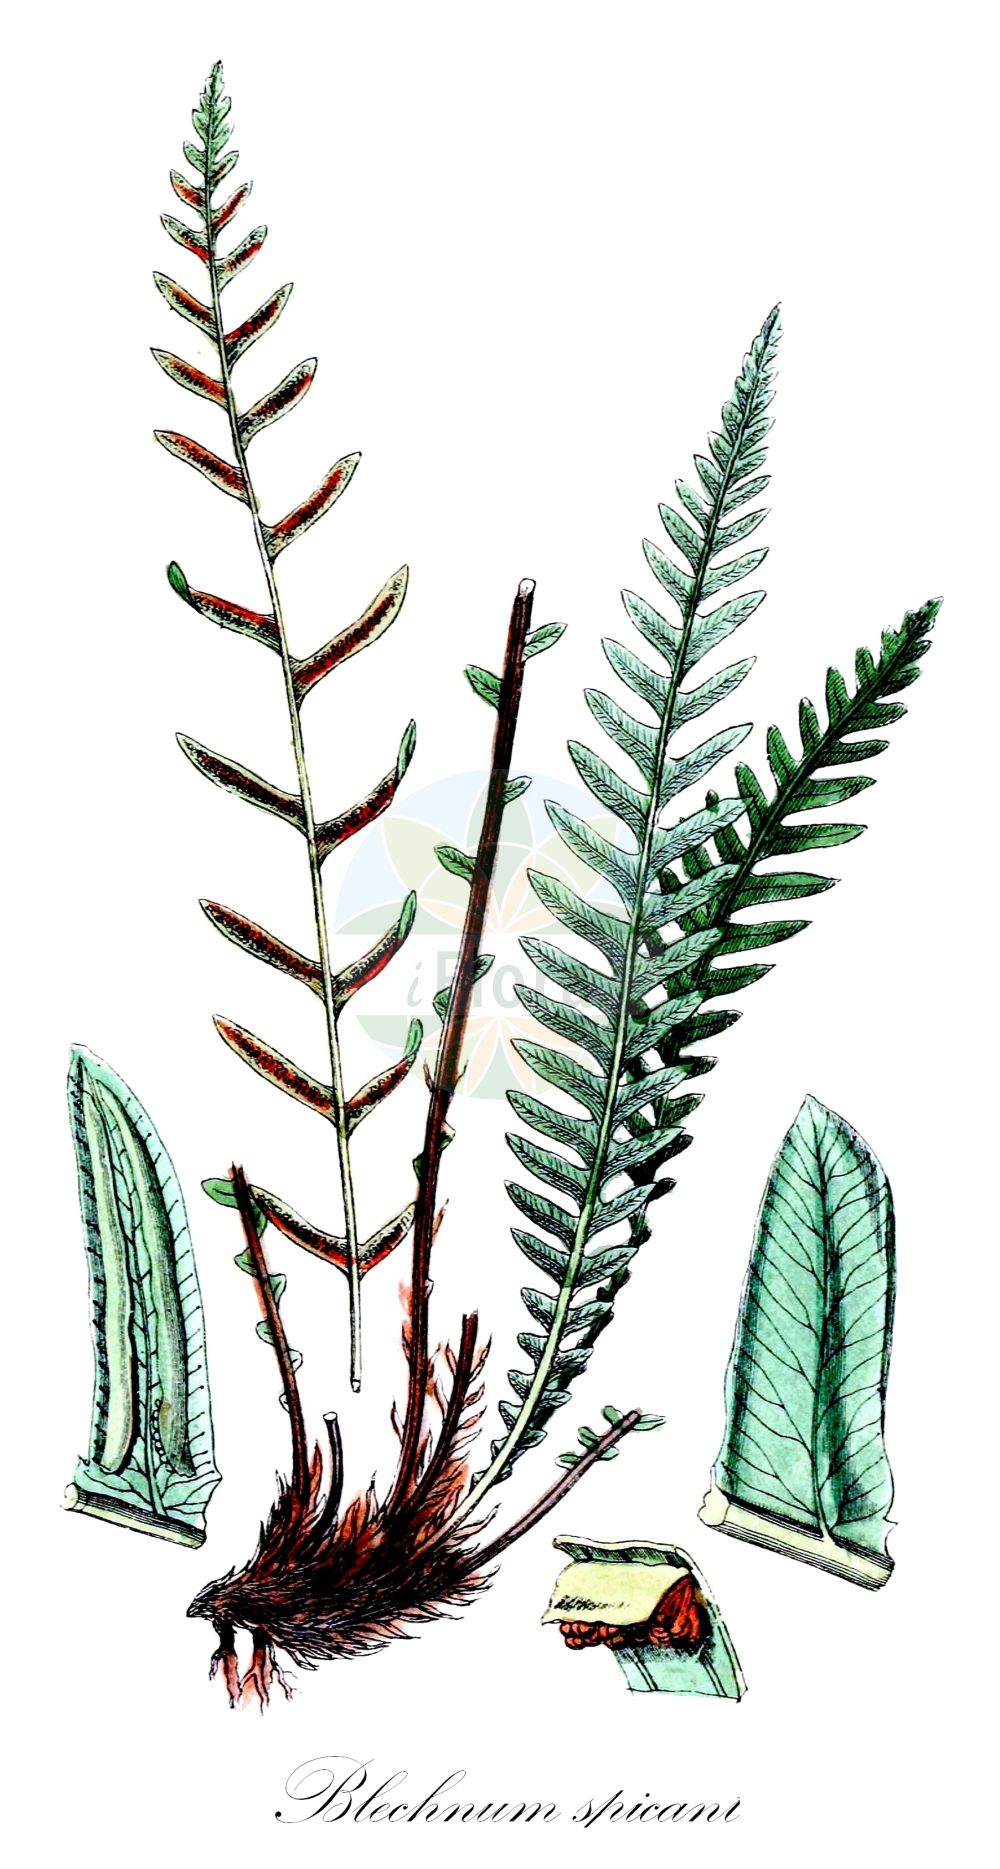 Historische Abbildung von Blechnum spicant (Rippenfarn - Hard-fern). Das Bild zeigt Blatt, Bluete, Frucht und Same. ---- Historical Drawing of Blechnum spicant (Rippenfarn - Hard-fern). The image is showing leaf, flower, fruit and seed.(Blechnum spicant,Rippenfarn,Hard-fern,Blechnum boreale,Blechnum homophyllum,Lomaria spicant,Osmunda spicant,Blechnum spicant,Rippenfarn,Hard-fern,Deer Fern,Blechnum,Rippenfarn,Hard Fern,Blechnaceae,Rippenfarngewächse,Hard Fern family,Blatt,Bluete,Frucht,Same,leaf,flower,fruit,seed,Sowerby (1790-1813))